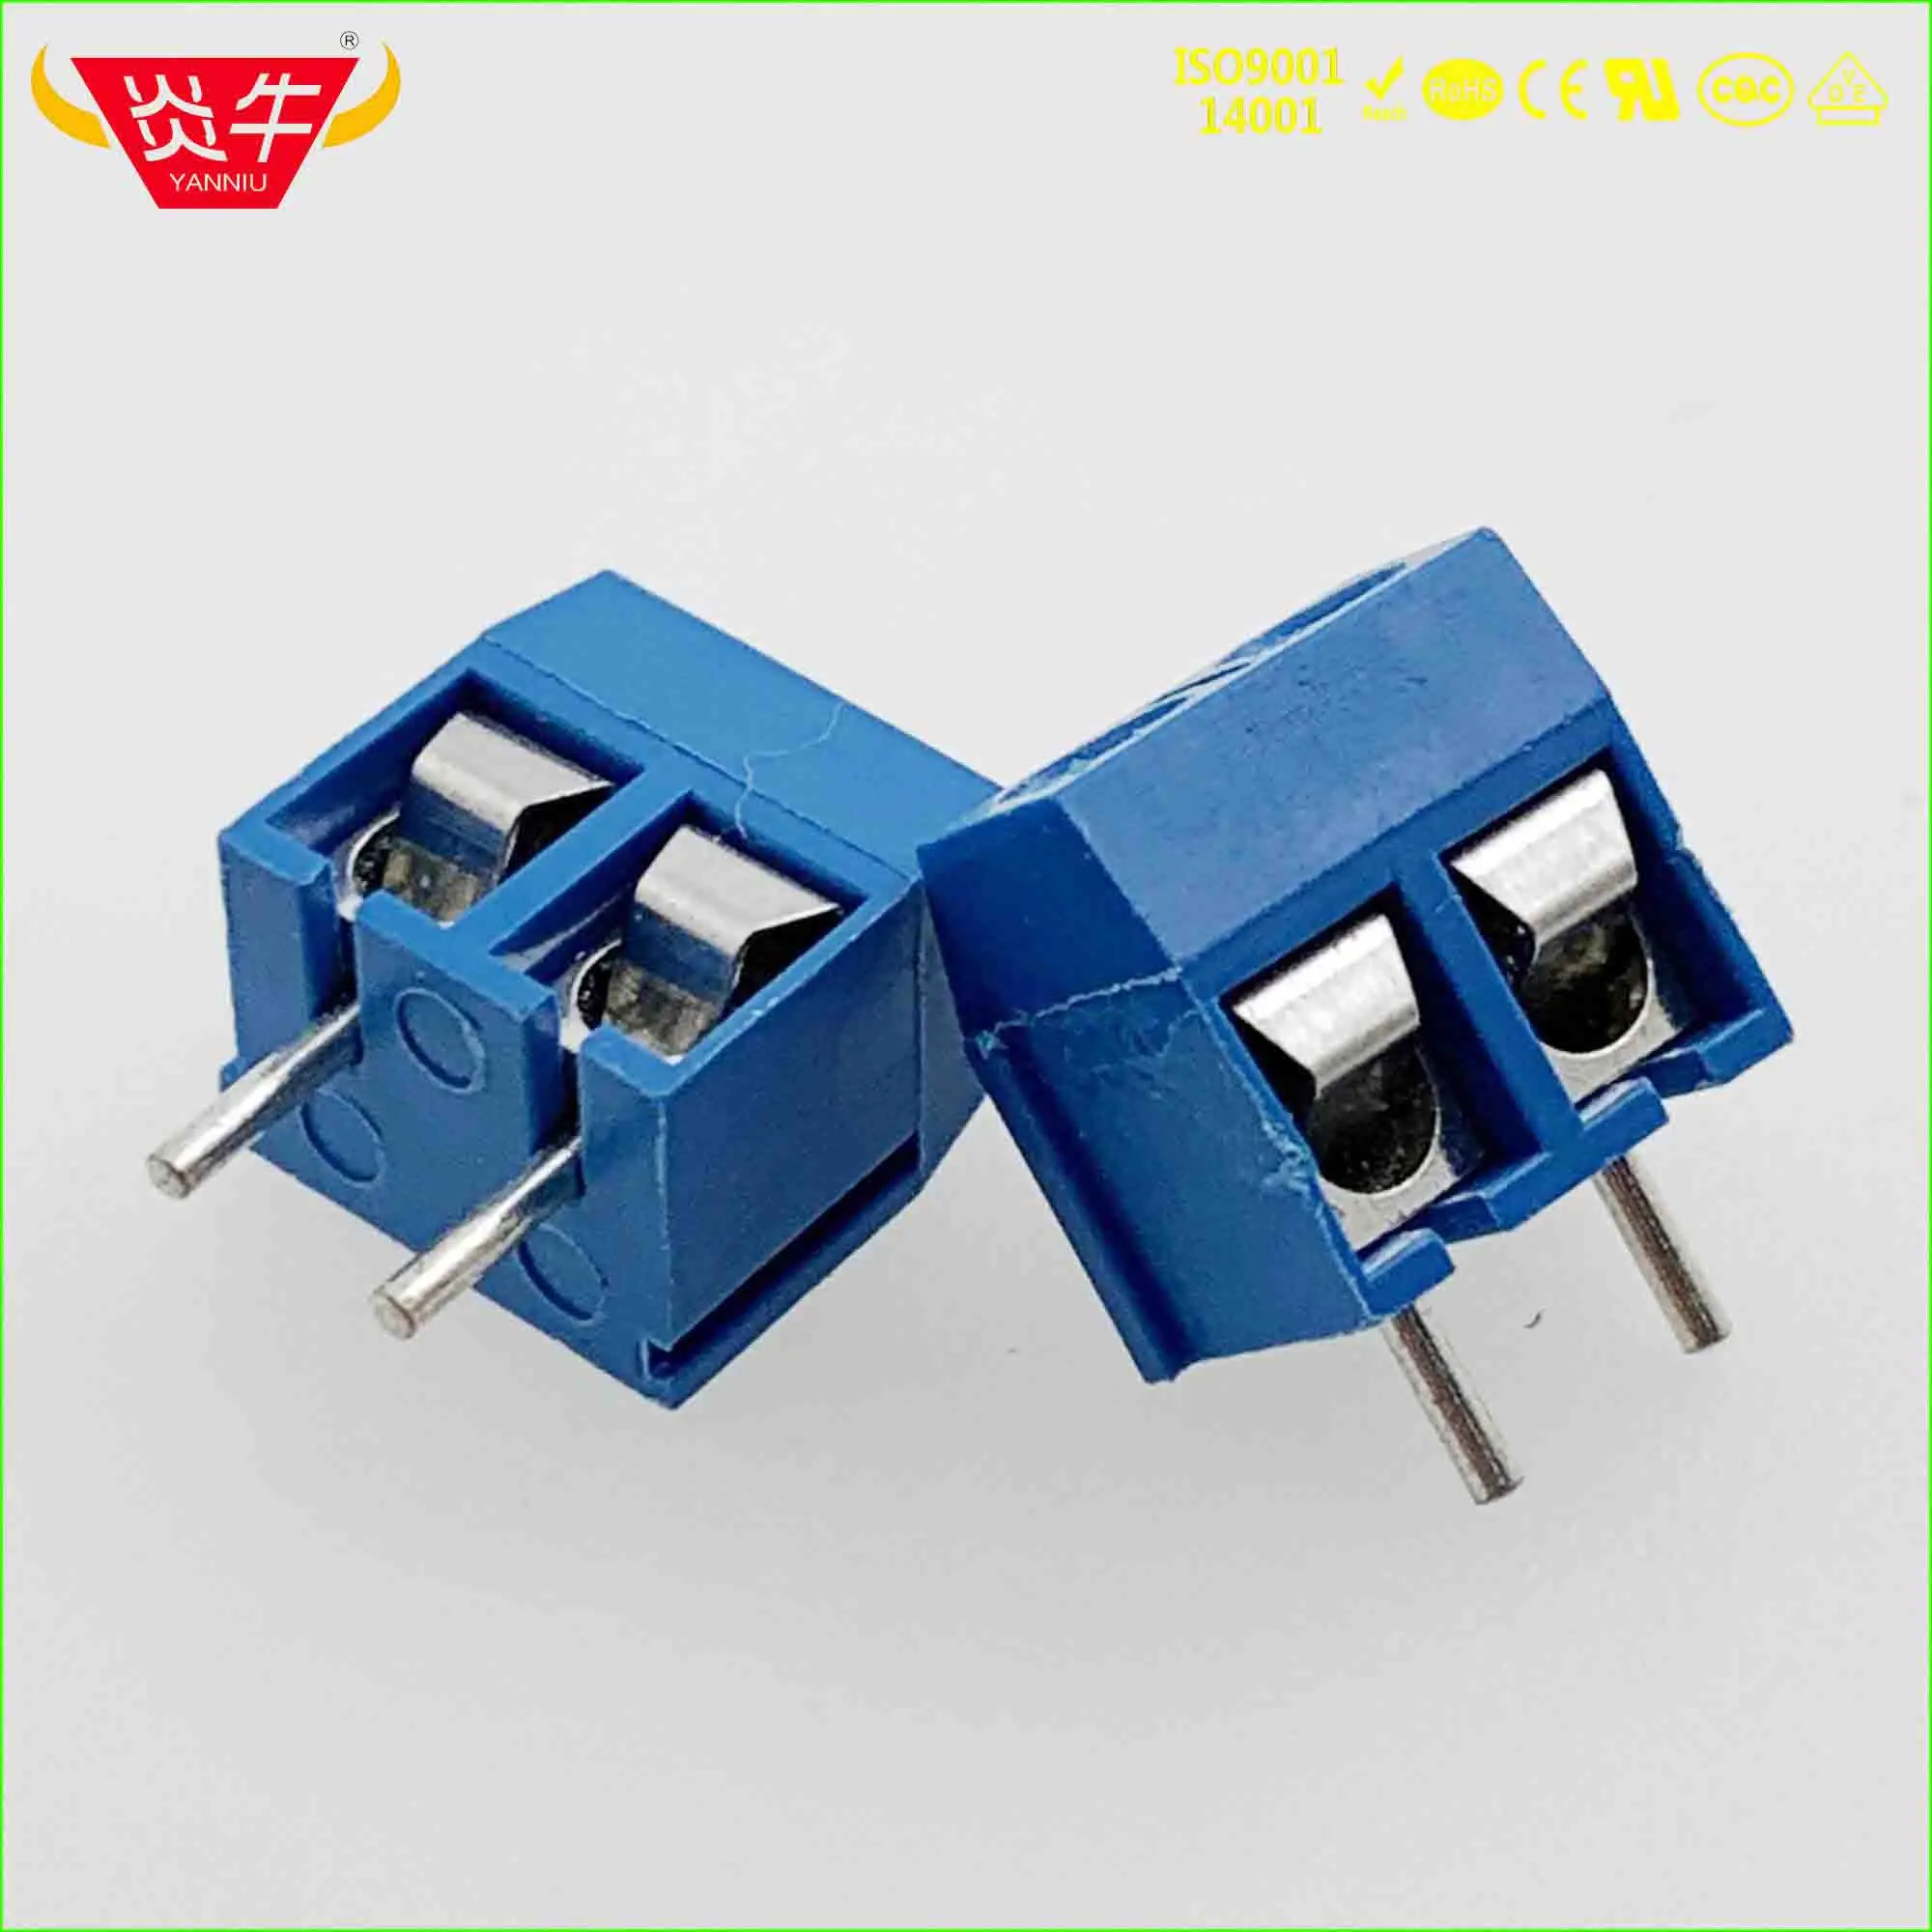 KF301 5,0 2P 3P PCB универсальные Винтовые клеммные блоки синий пластик Высота 10 мм DG301 5,0 мм Шаг 2PIN 3PIN PHOENIX DEGSON KEFA - Цвет: 301-5.0-2P